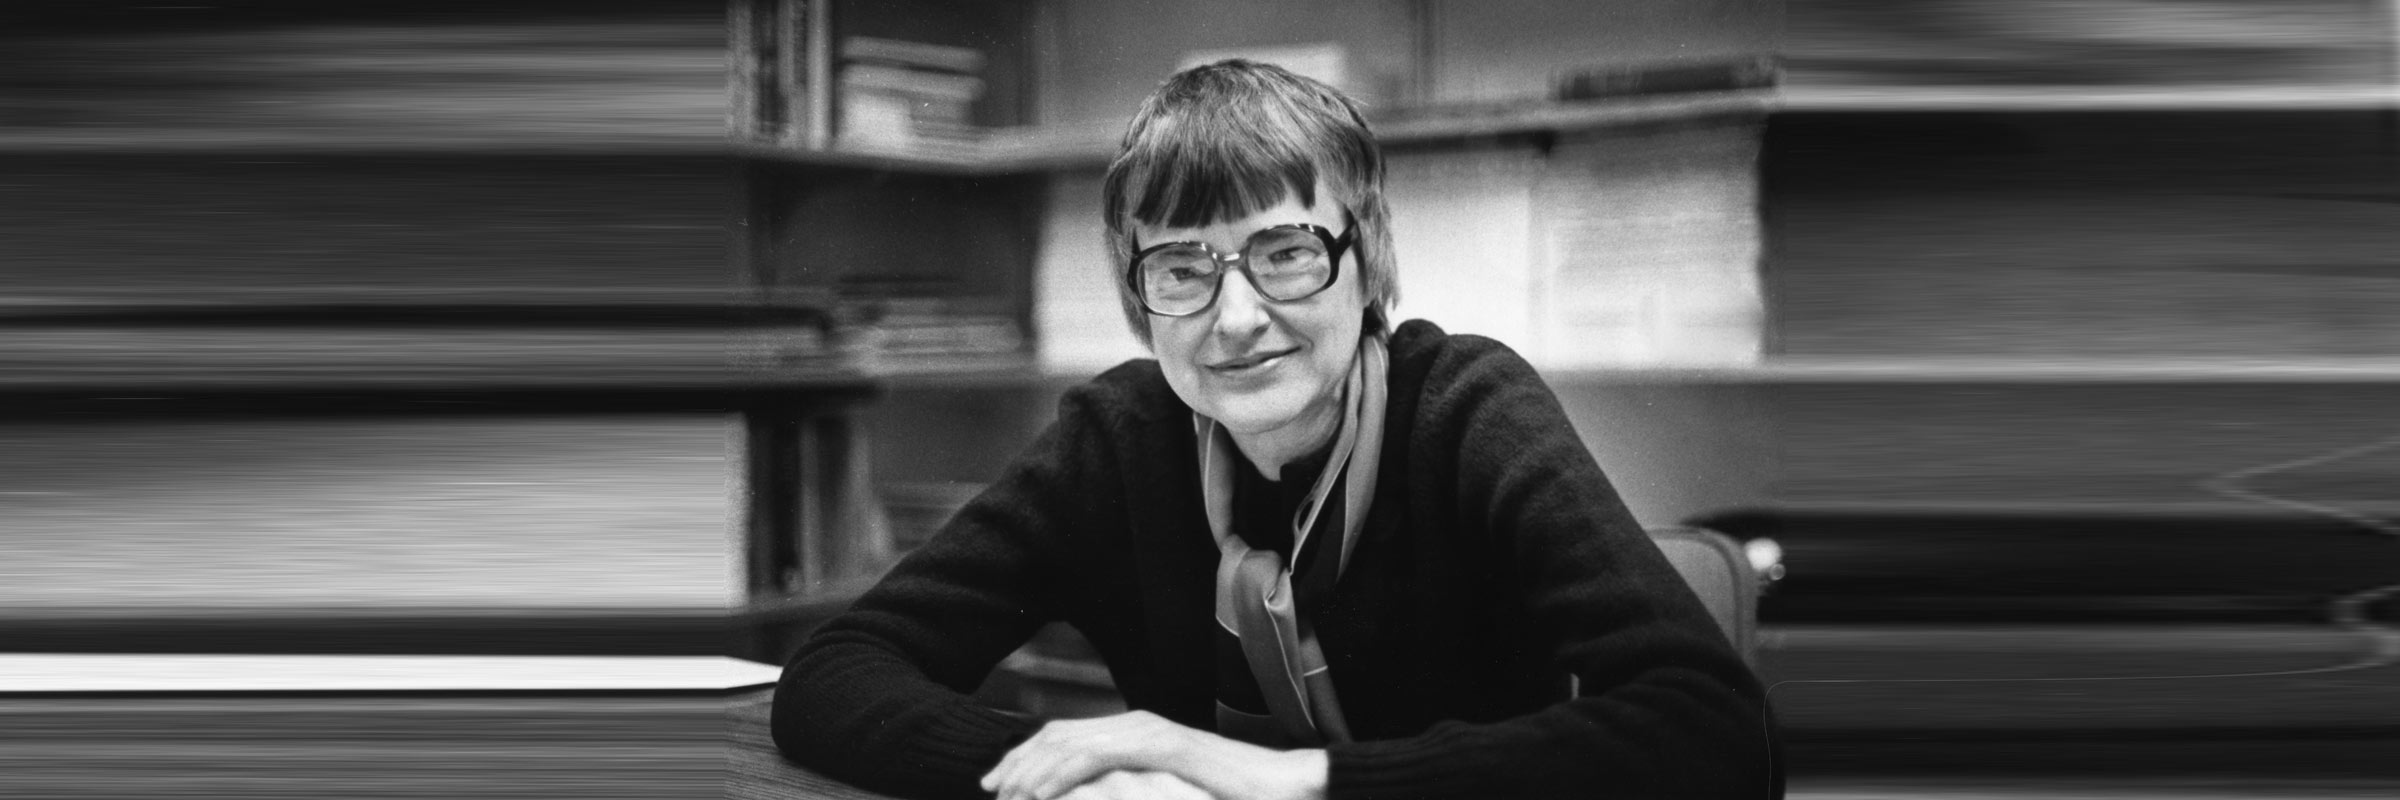 In Memoriam: Marion Slaughter Wetzel, professor emeritus